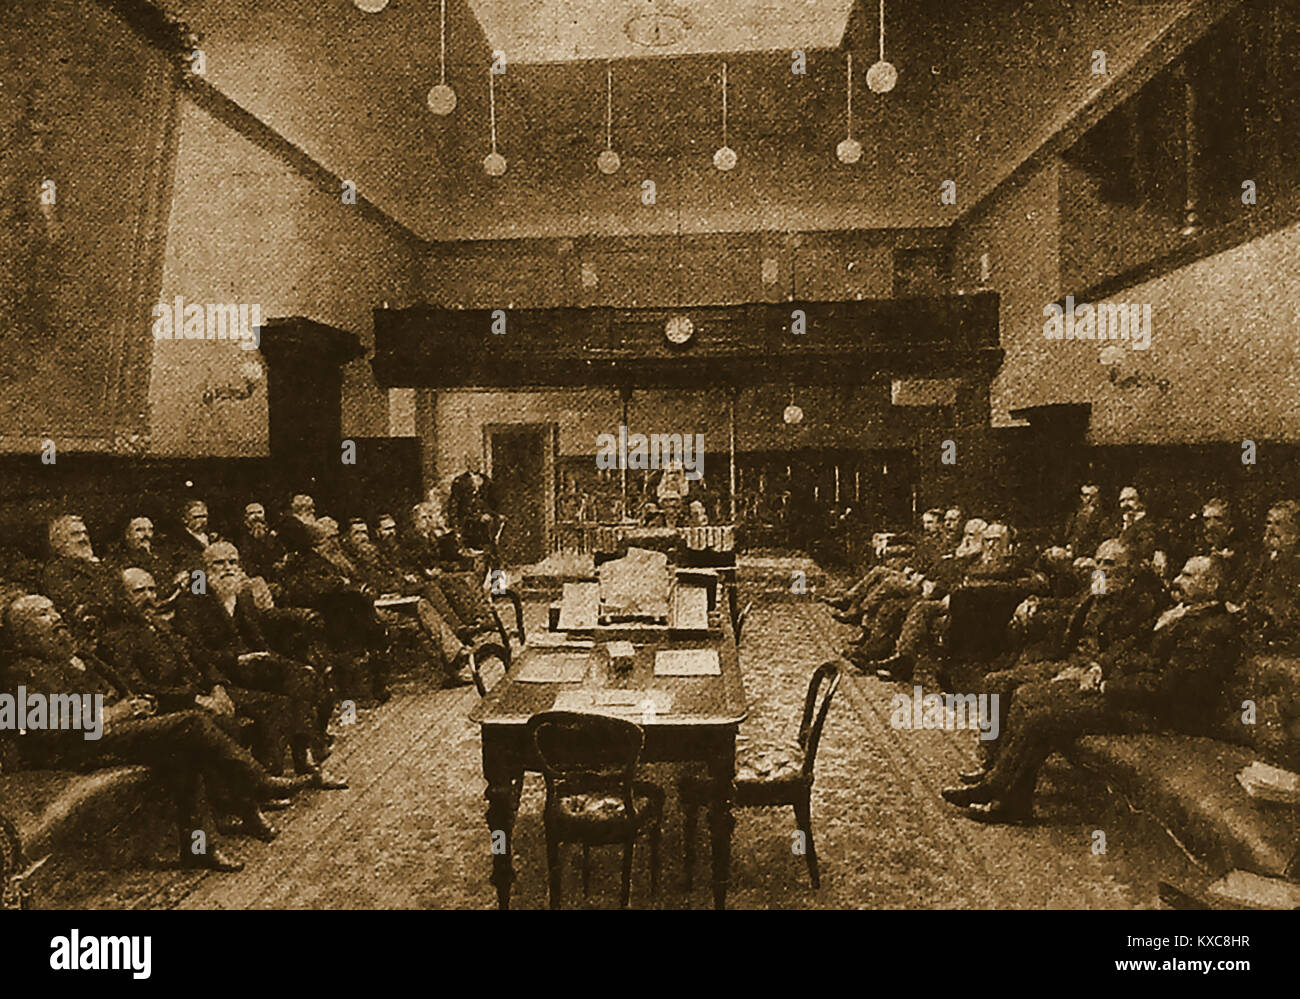 Gouvernement de la Tasmanie - PARLEMENT EUROPÉEN . Une vieille illustration montrant la Tasmanie Chambre d'assemblée en session extraordinaire 1900 Banque D'Images